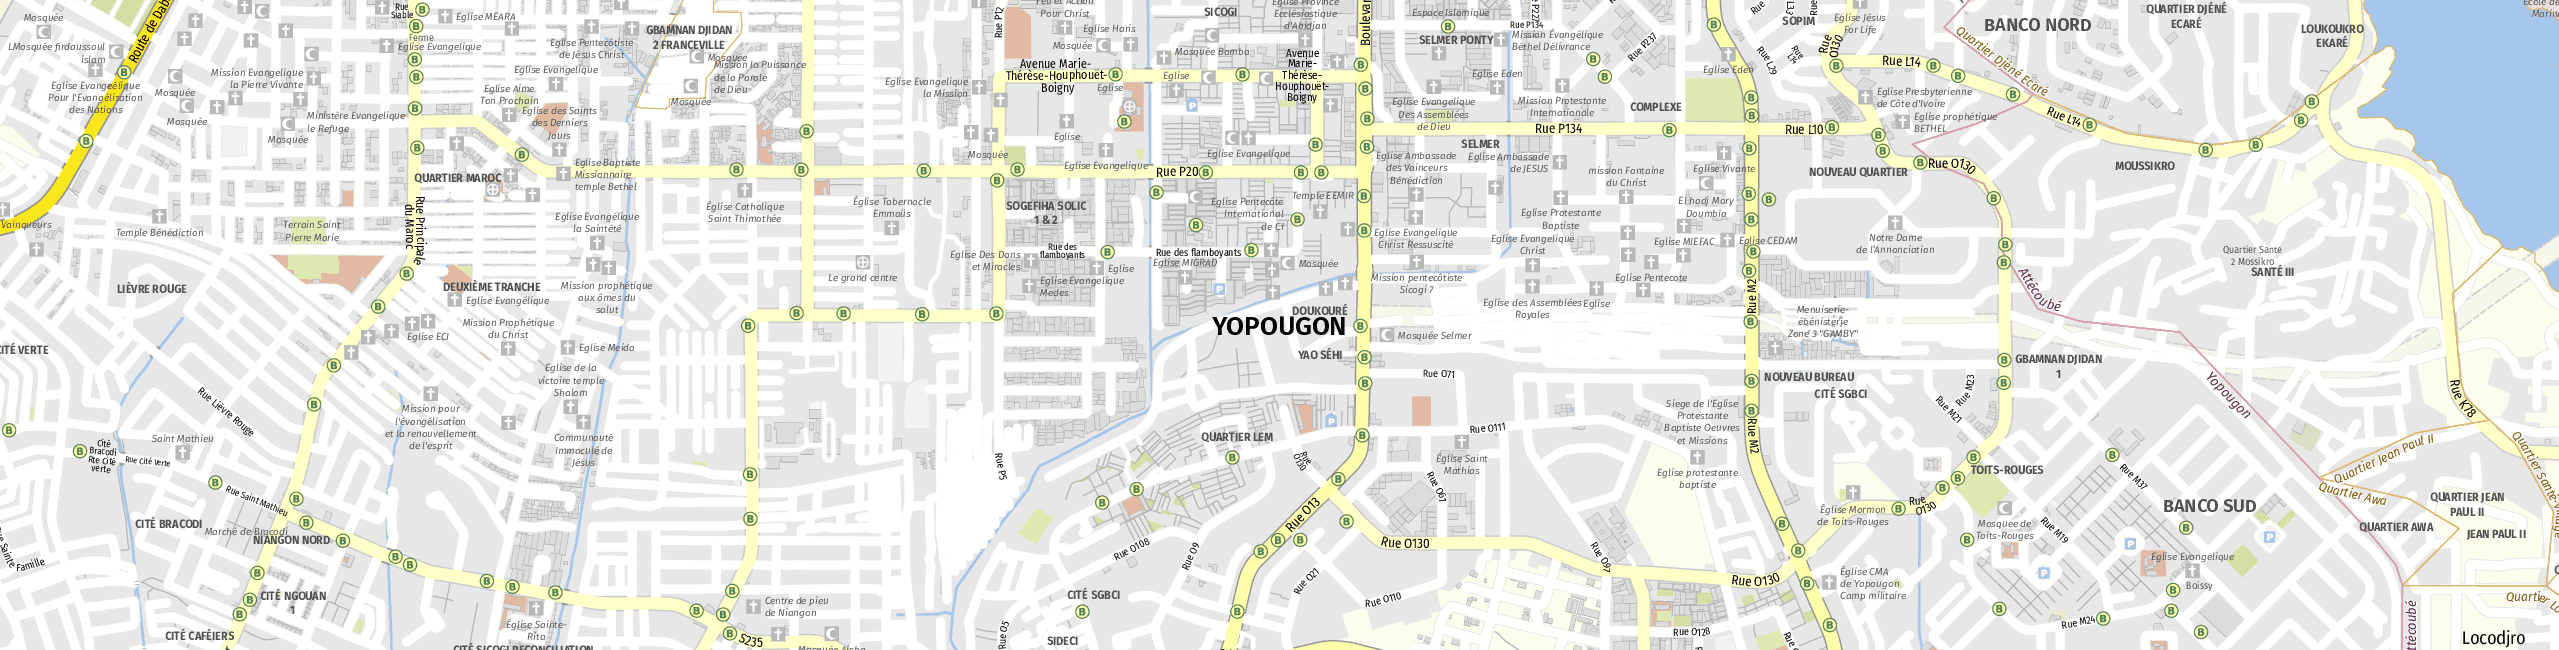 Stadtplan Yopougon zum Downloaden.